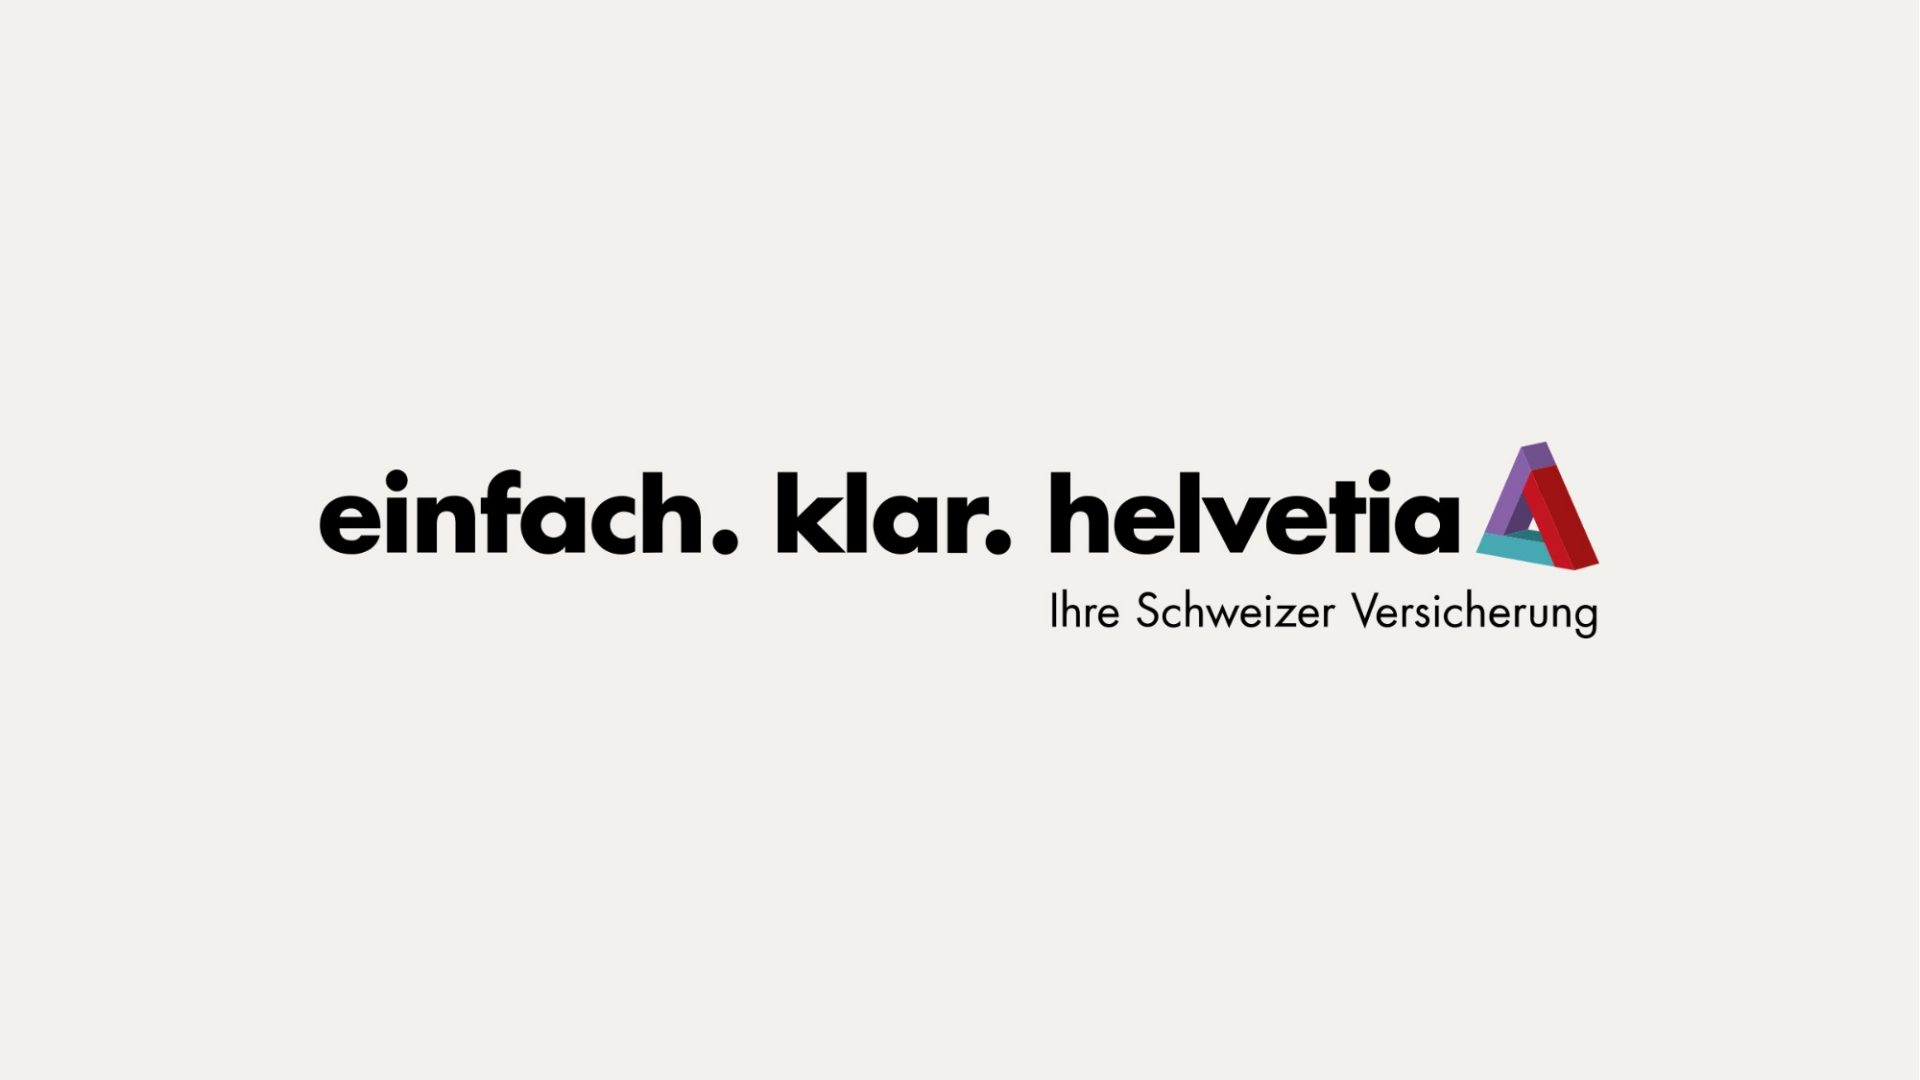 helvetia-logo-claim-de